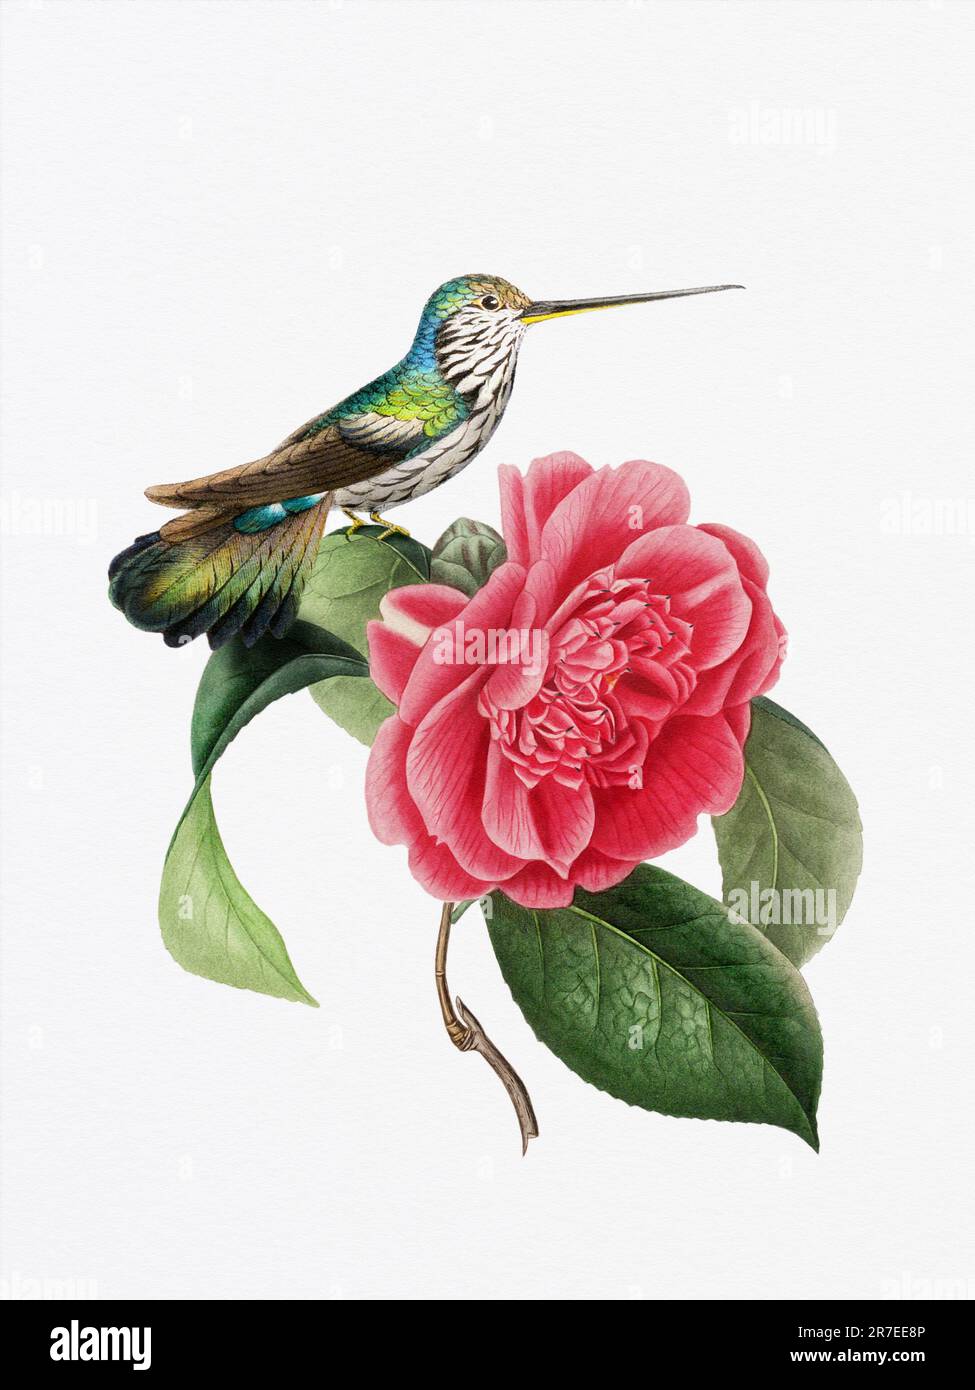 Una deliziosa illustrazione con un colibrì su un fiore di camelia, che cattura l'armonia dei colori della natura e dei momenti delicati. Foto Stock